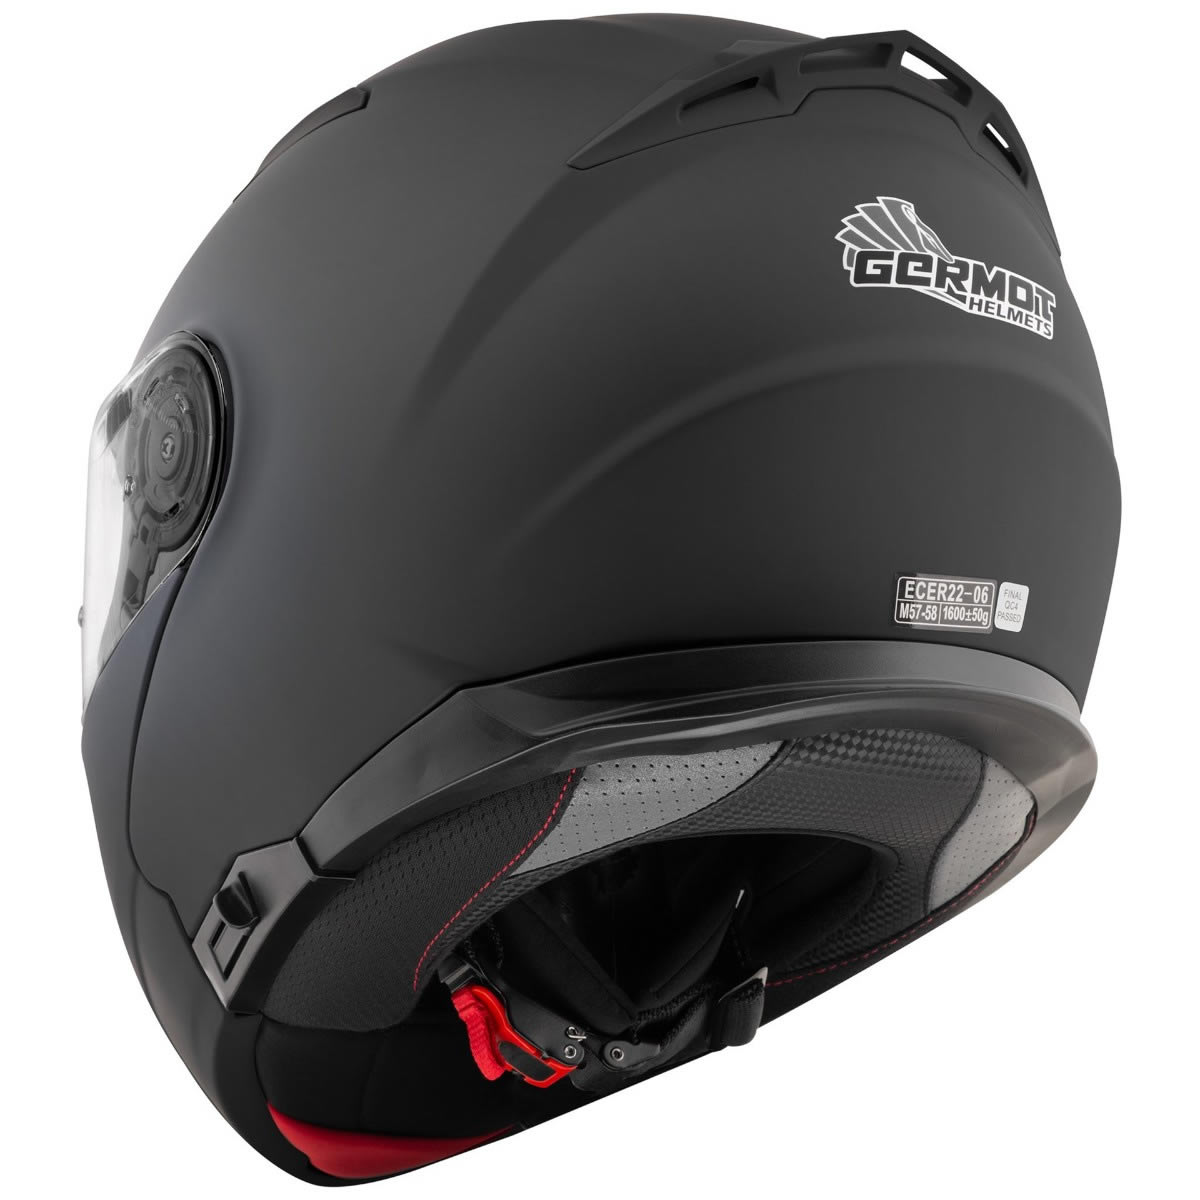 Germot GM 970 Helm, schwarz matt